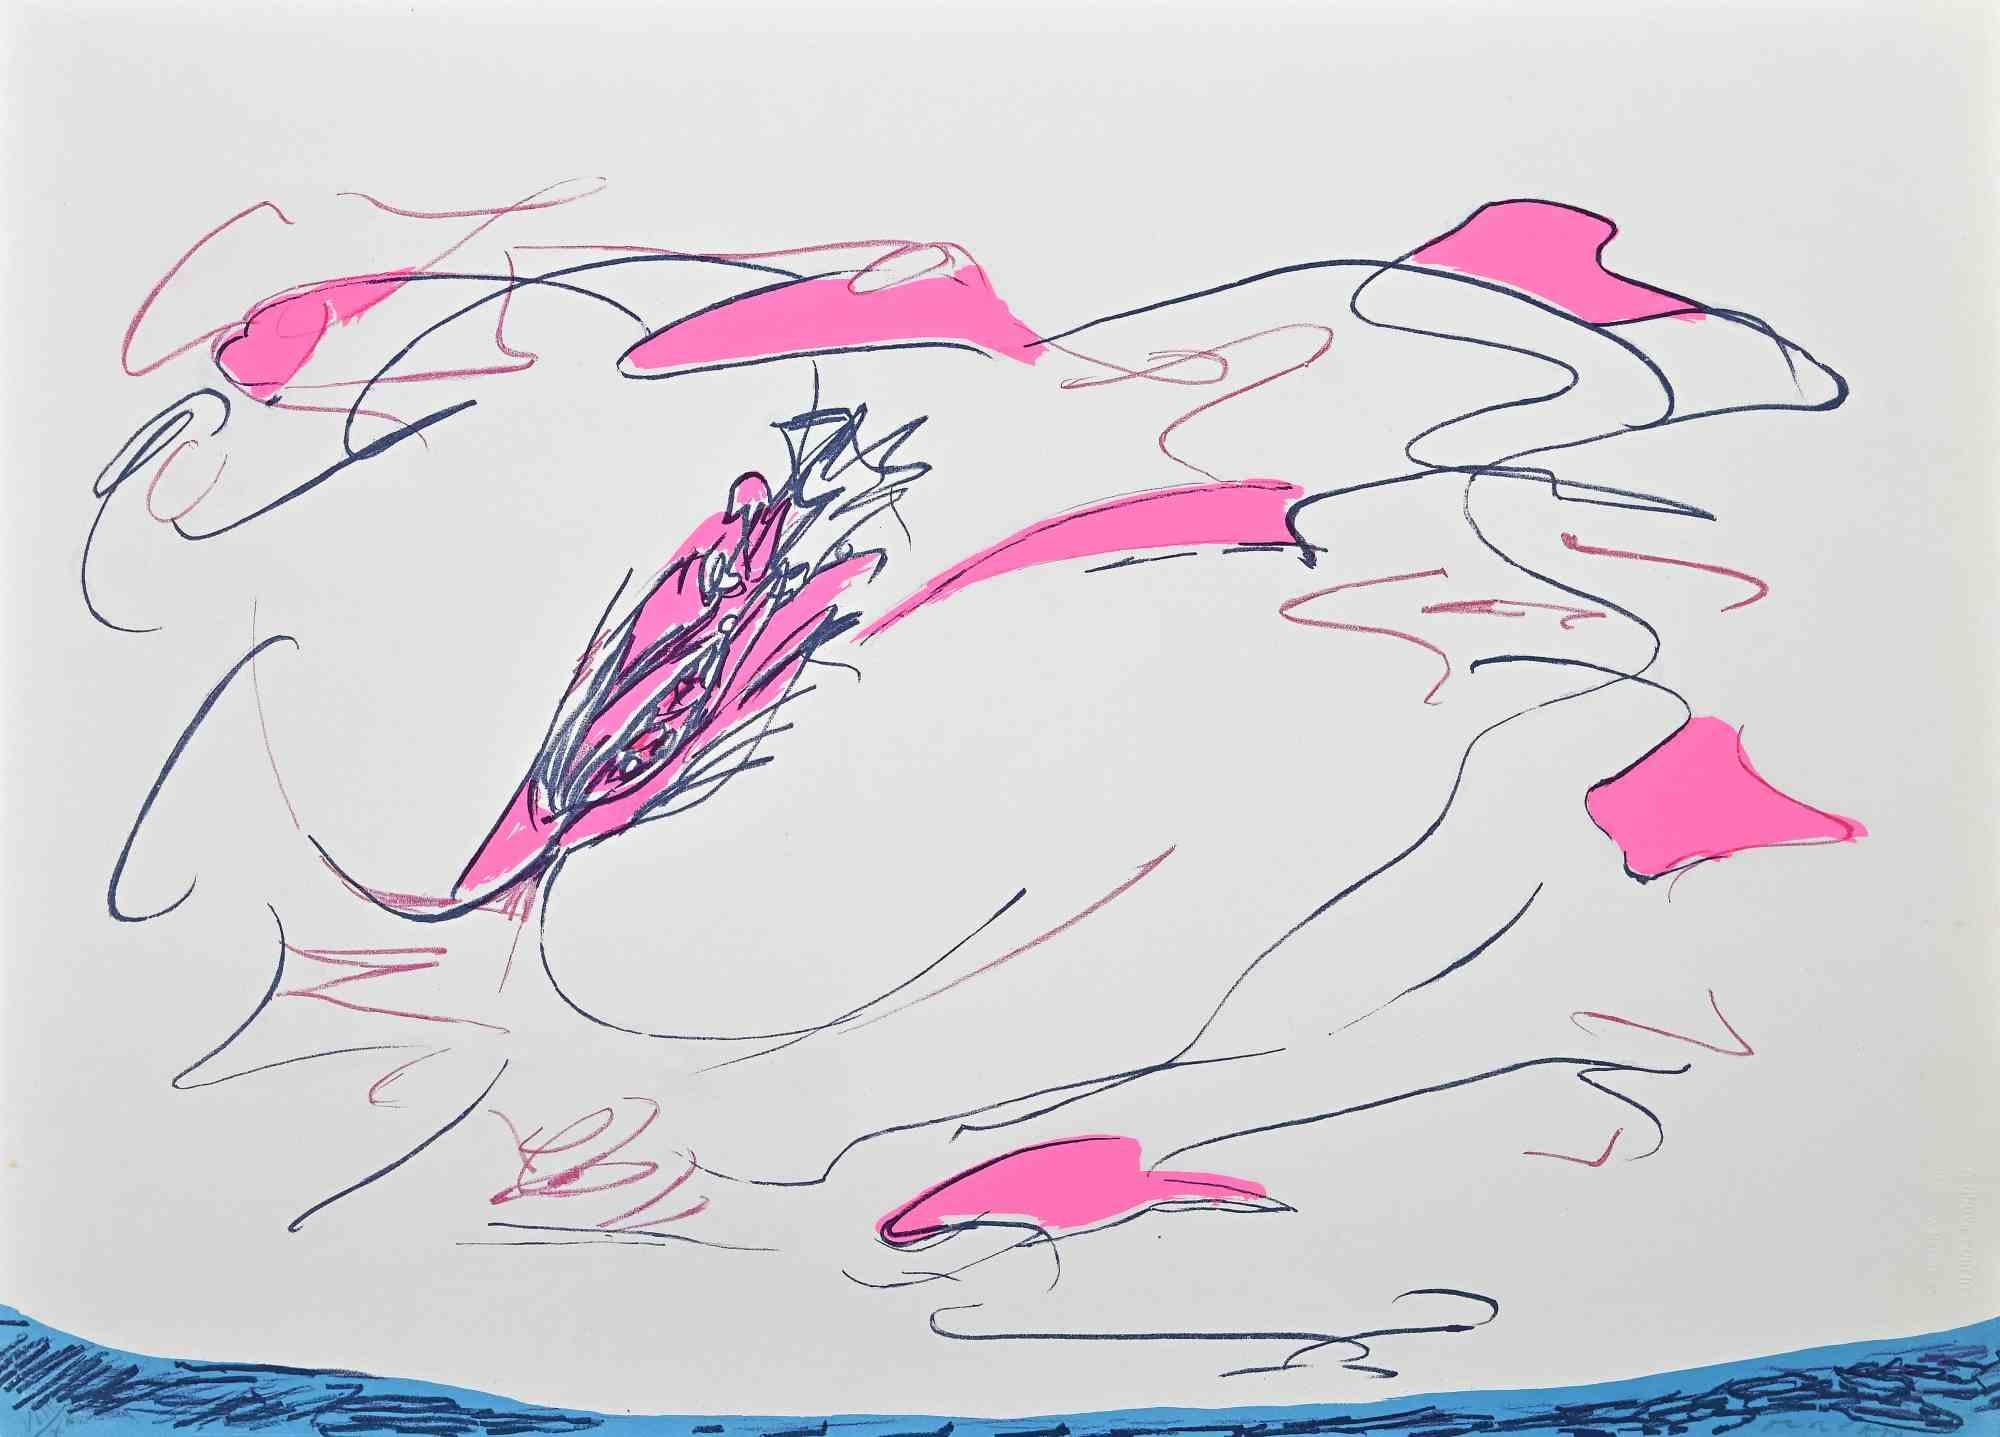 Abstract Composition ist ein farbiger Siebdruck des zeitgenössischen Künstlers Giulio Turcato aus dem Jahr 1973.

Handsigniert mit Bleistift unten rechts.

Nummeriert am linken unteren Rand, Ausgabe VIII/X.

Echtheitslabel von La Nuova Foglio auf